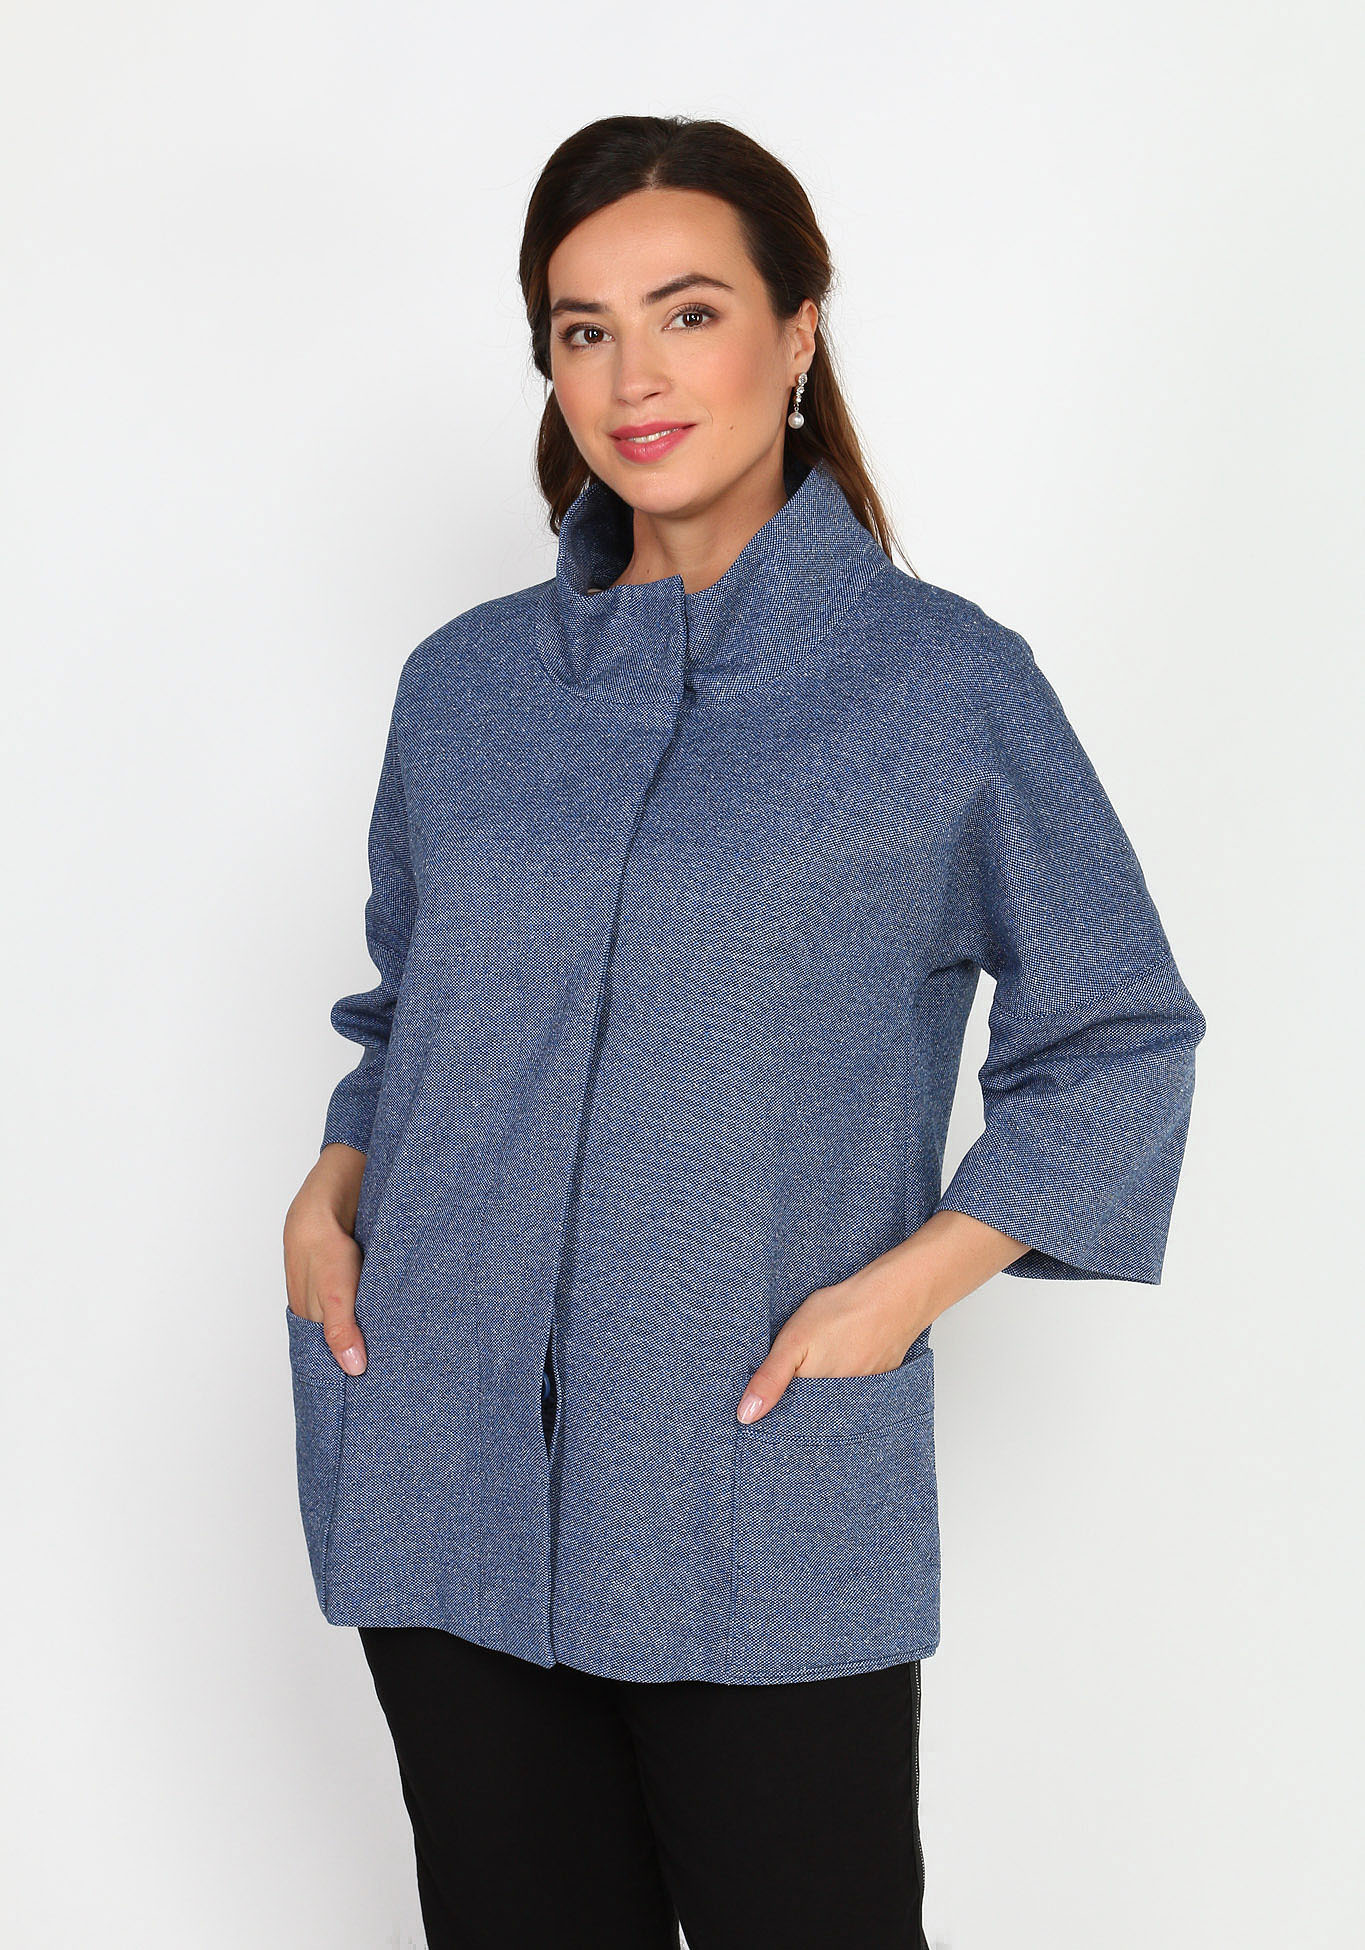 Пальто облегченное с воротником-стойкой Новое Время, размер 48, цвет синий укороченная модель - фото 1